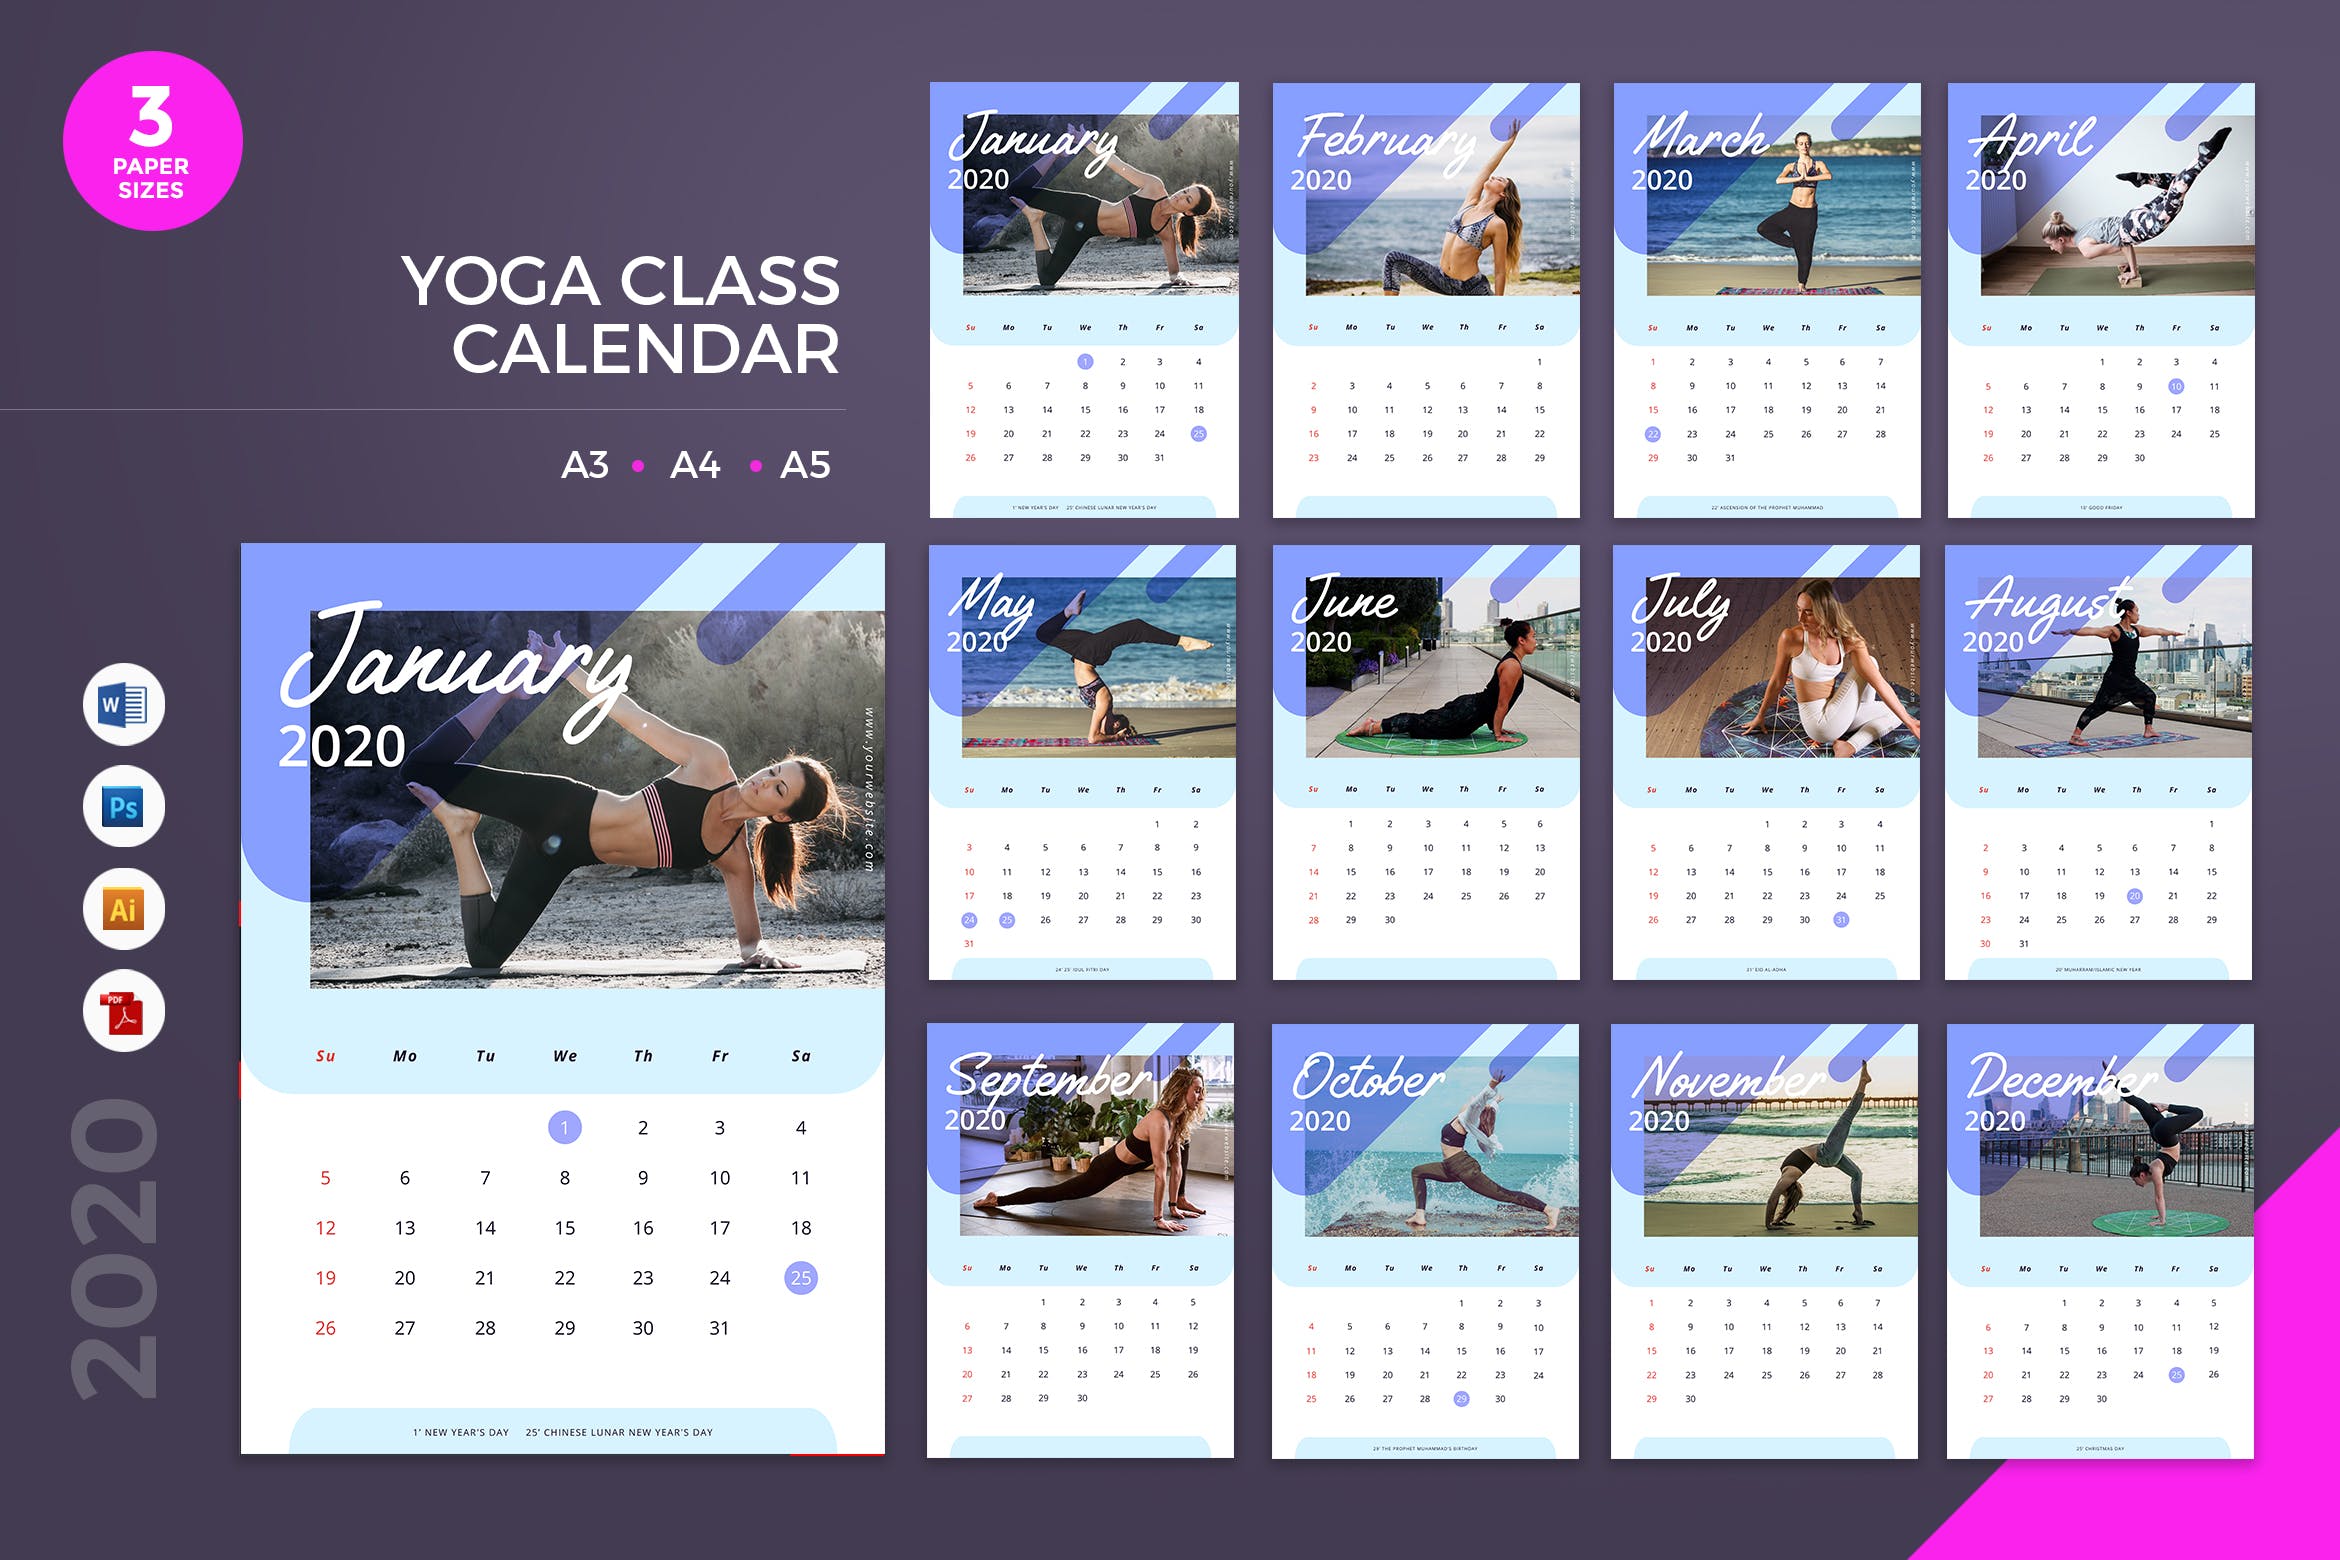 瑜伽馆定制2020年新年日历表设计模板 Yoga Class Calendar 2020 Calendar – AI, DOC, PSD插图